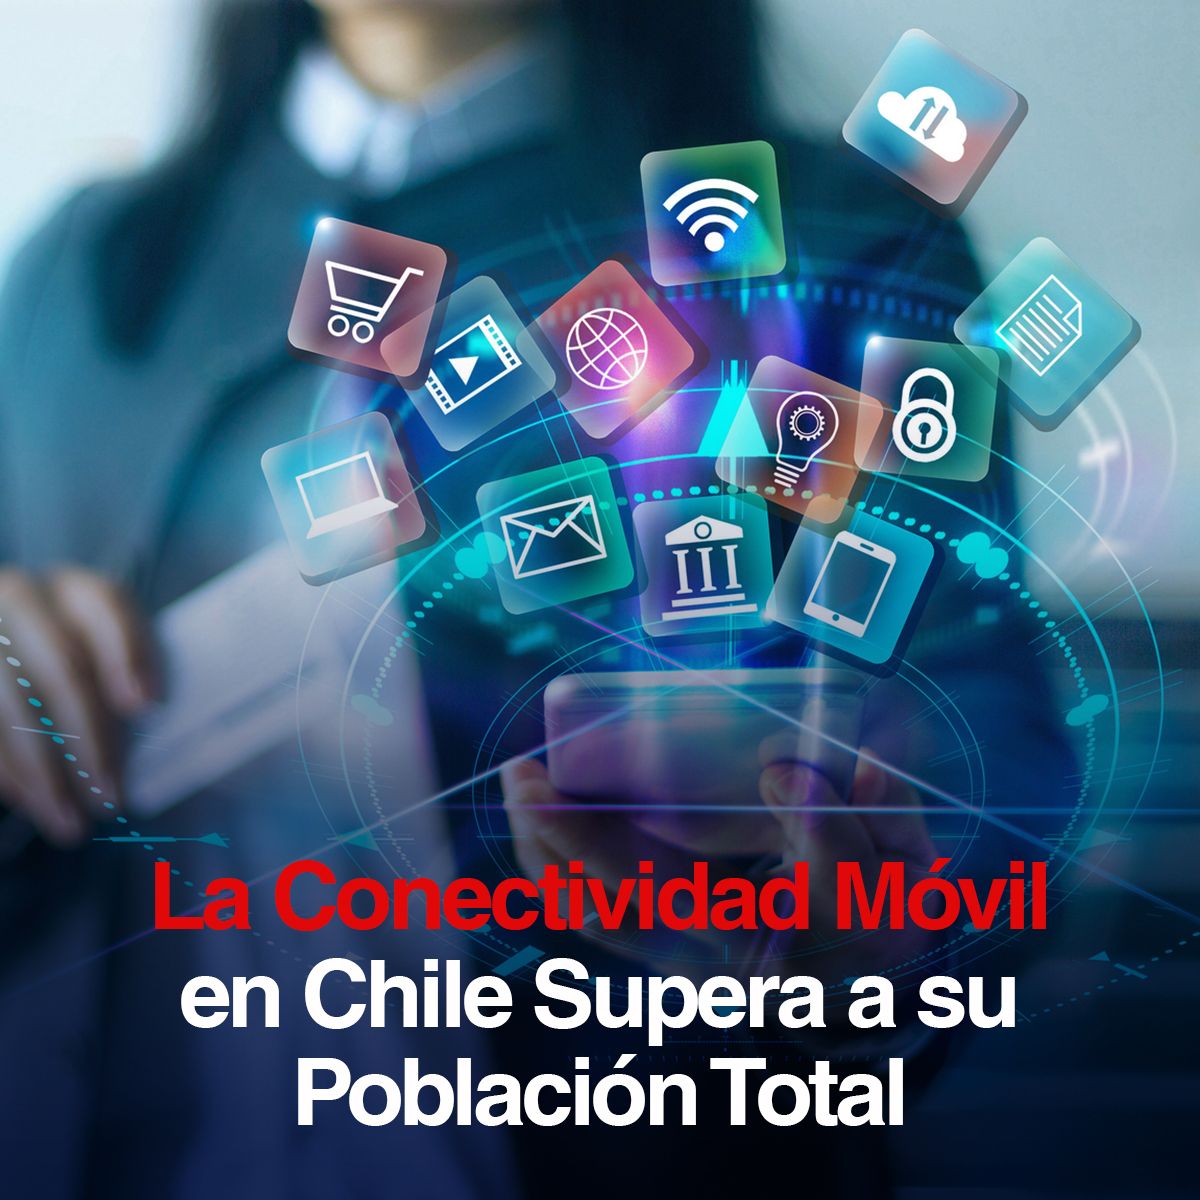 La Conectividad Móvil en Chile Supera a su Población Total